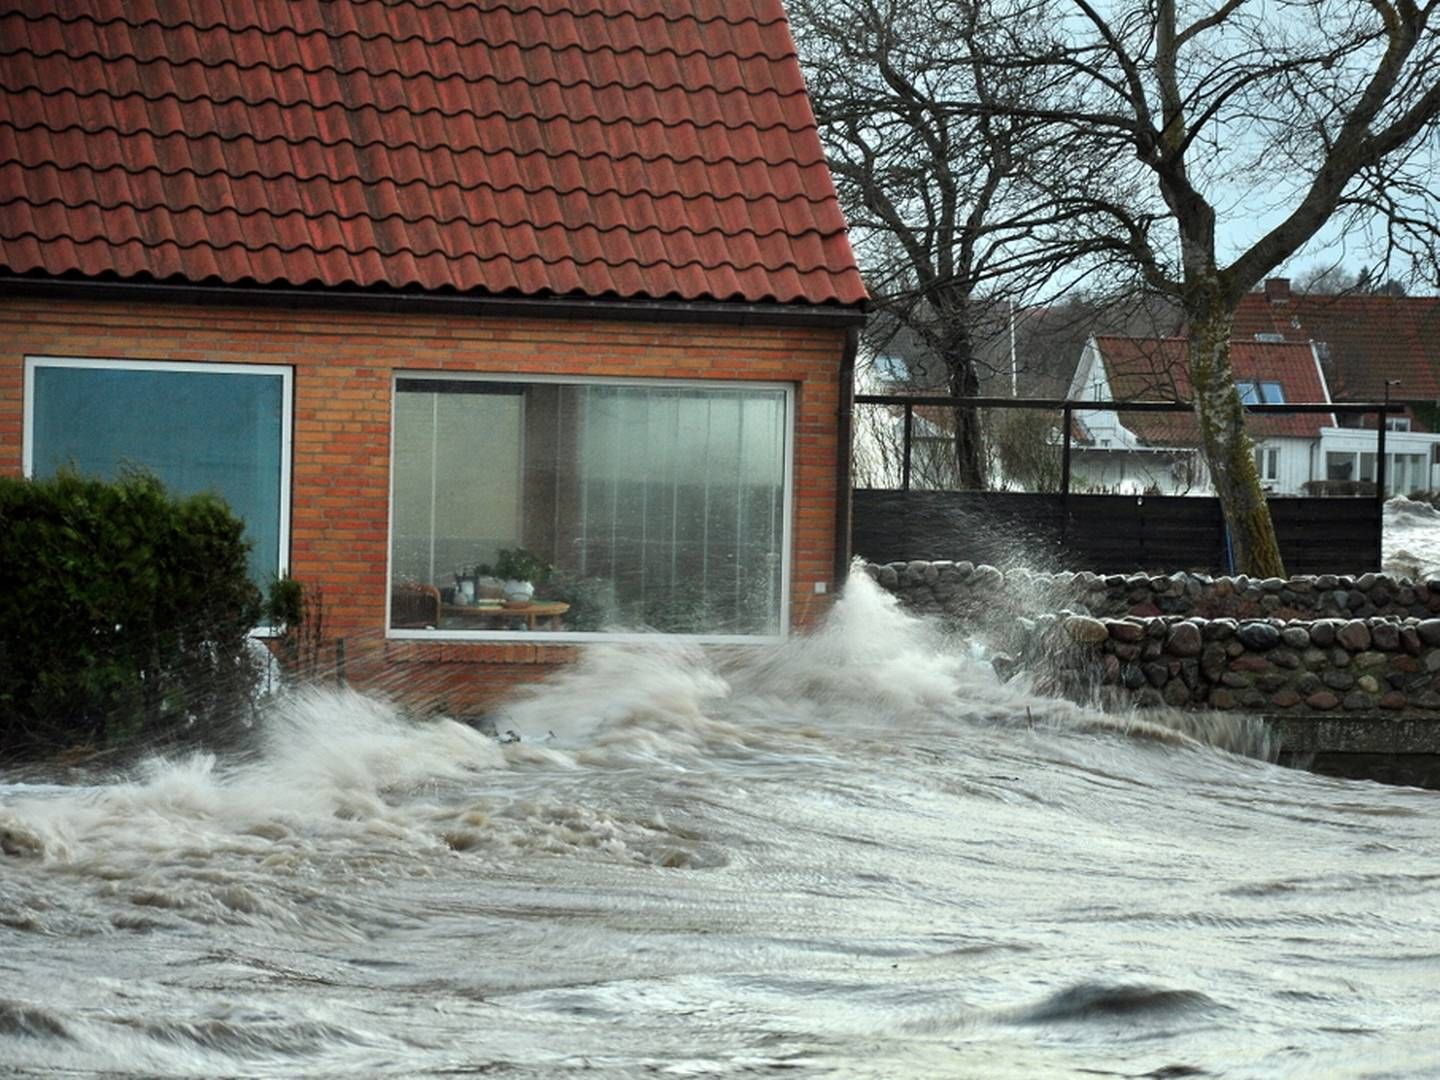 Oversvømmelser kan være alvorlige, det så vi f.eks. i december 2013, hvor stormen ’Bodil’ forårsagede omfattende oversvømmelser i beboede områder omkring Roskilde Fjord. | Foto: Martin Stendel, DMI